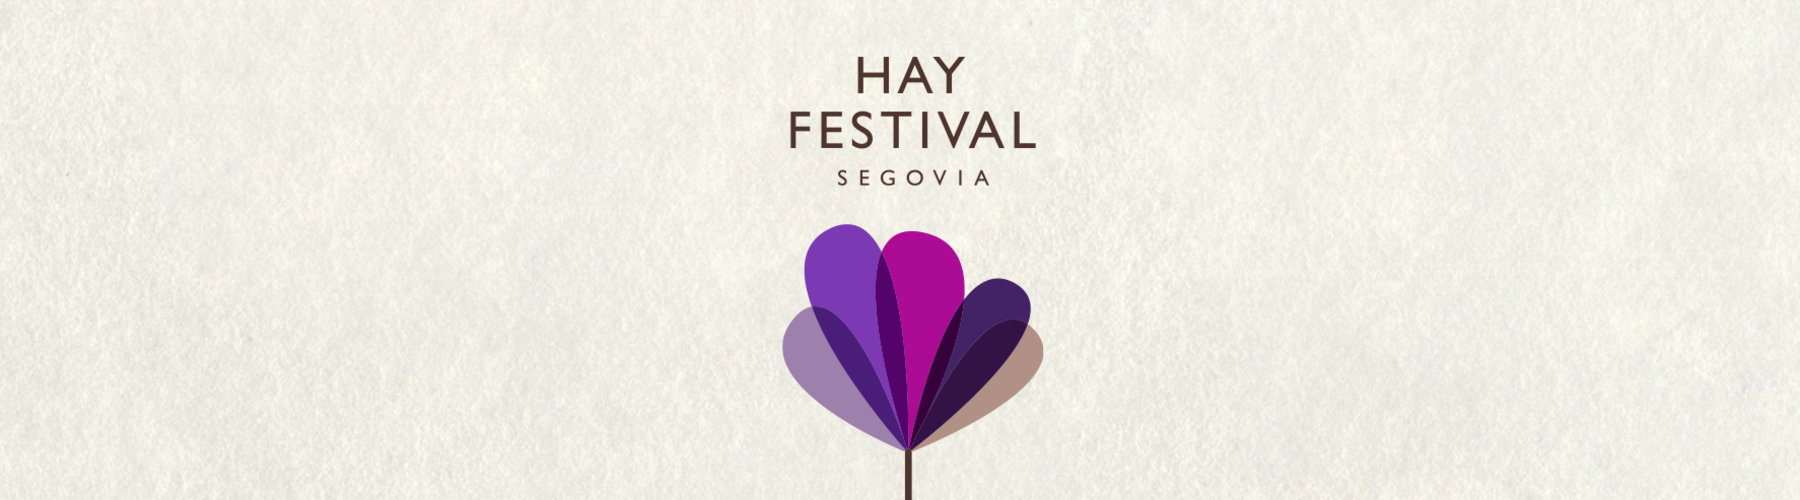 Podimo y el Hay Festival de Segovia han llegado a un acuerdo para ofrecer algunos de los eventos más importantes de la edición de este año 2020, marcada por el Covid-19 y los límites de aforo y desplazamientos